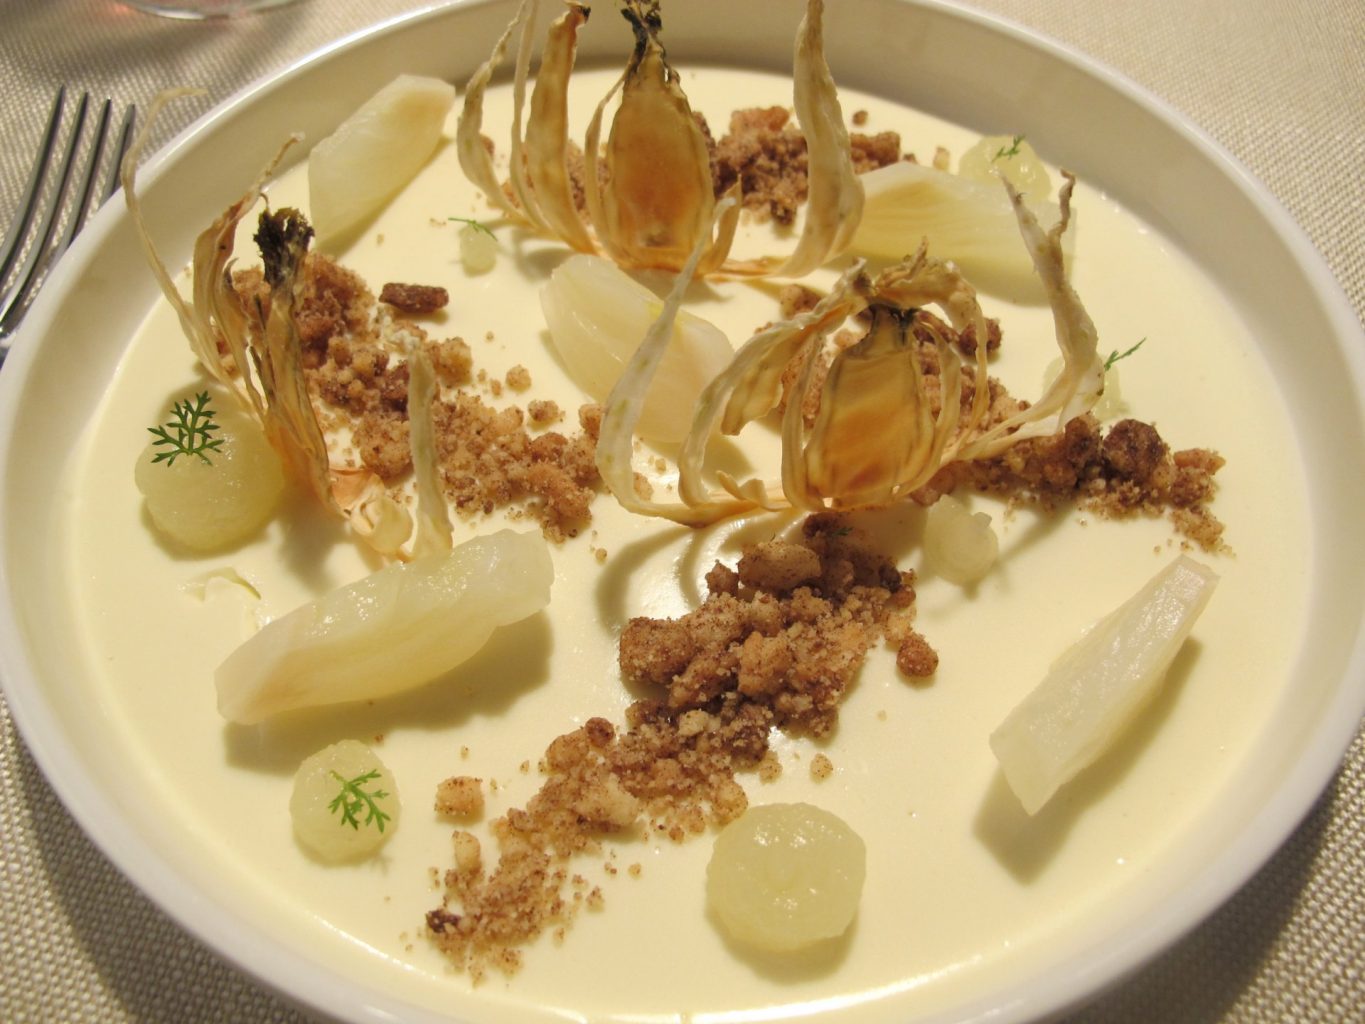 Dessert, sedicesimo secolo ristorante orzinuovi